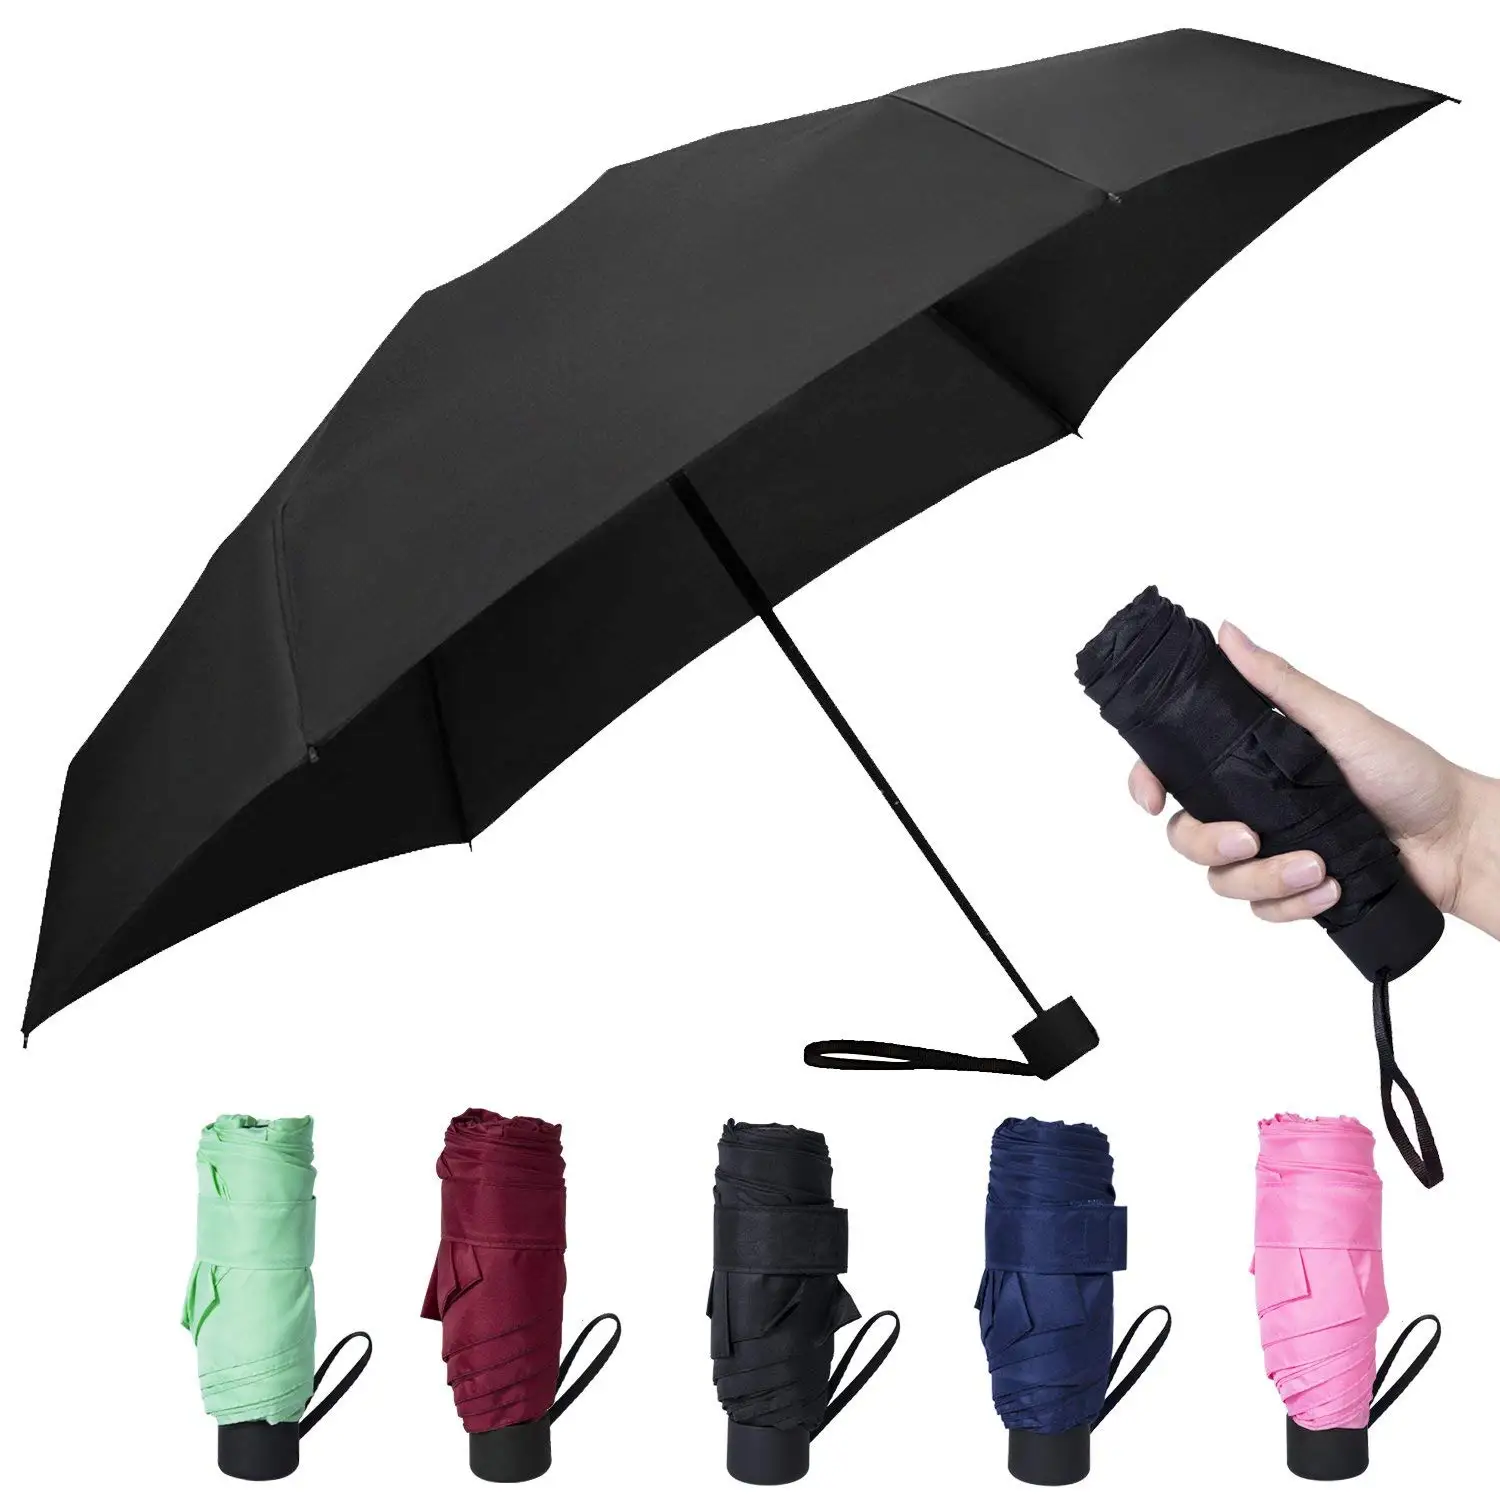 Мини зонтики. Зонт с механическим открыванием. Мини зонт. Реклама зонта. Зонт мини женский.